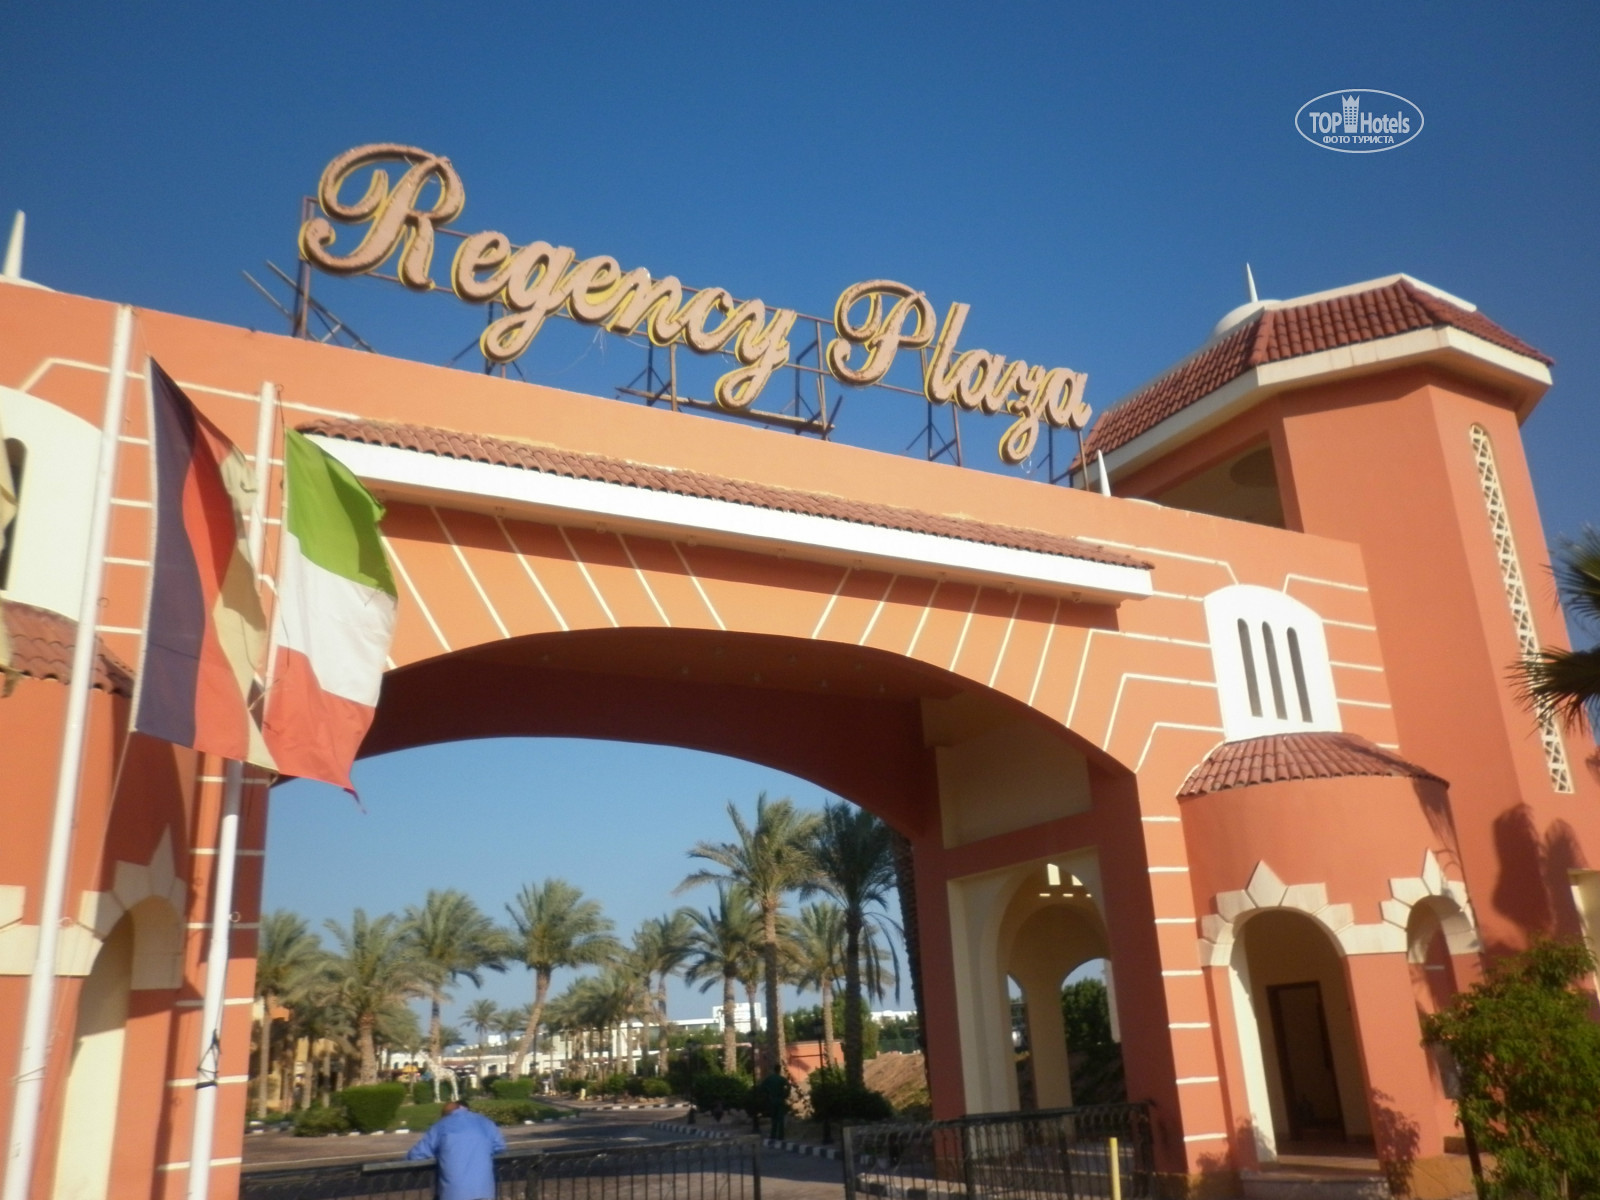 Regency plaza aqua park spa отзывы. Отель Regency Plaza Aqua Park Spa 5. Редженси Плаза Египет. Египет,Шарм-Эль-Шейх,Regency Plaza Aqua Park. Египет отель Редженси Плаза.